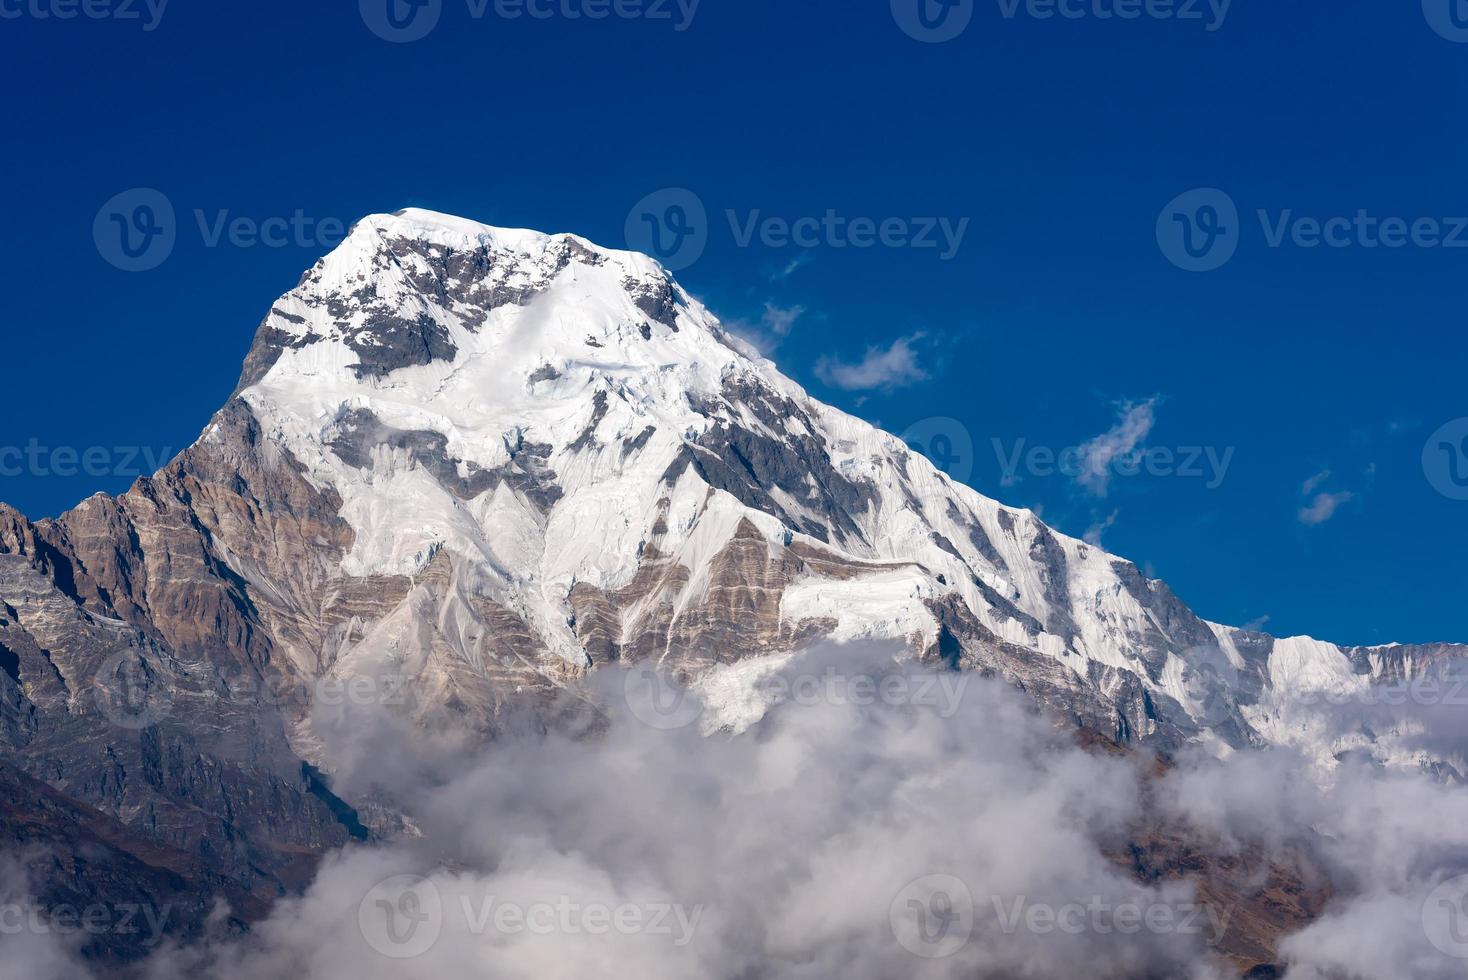 annapurna södra bergstopp med blå himmel bakgrund i nepal foto